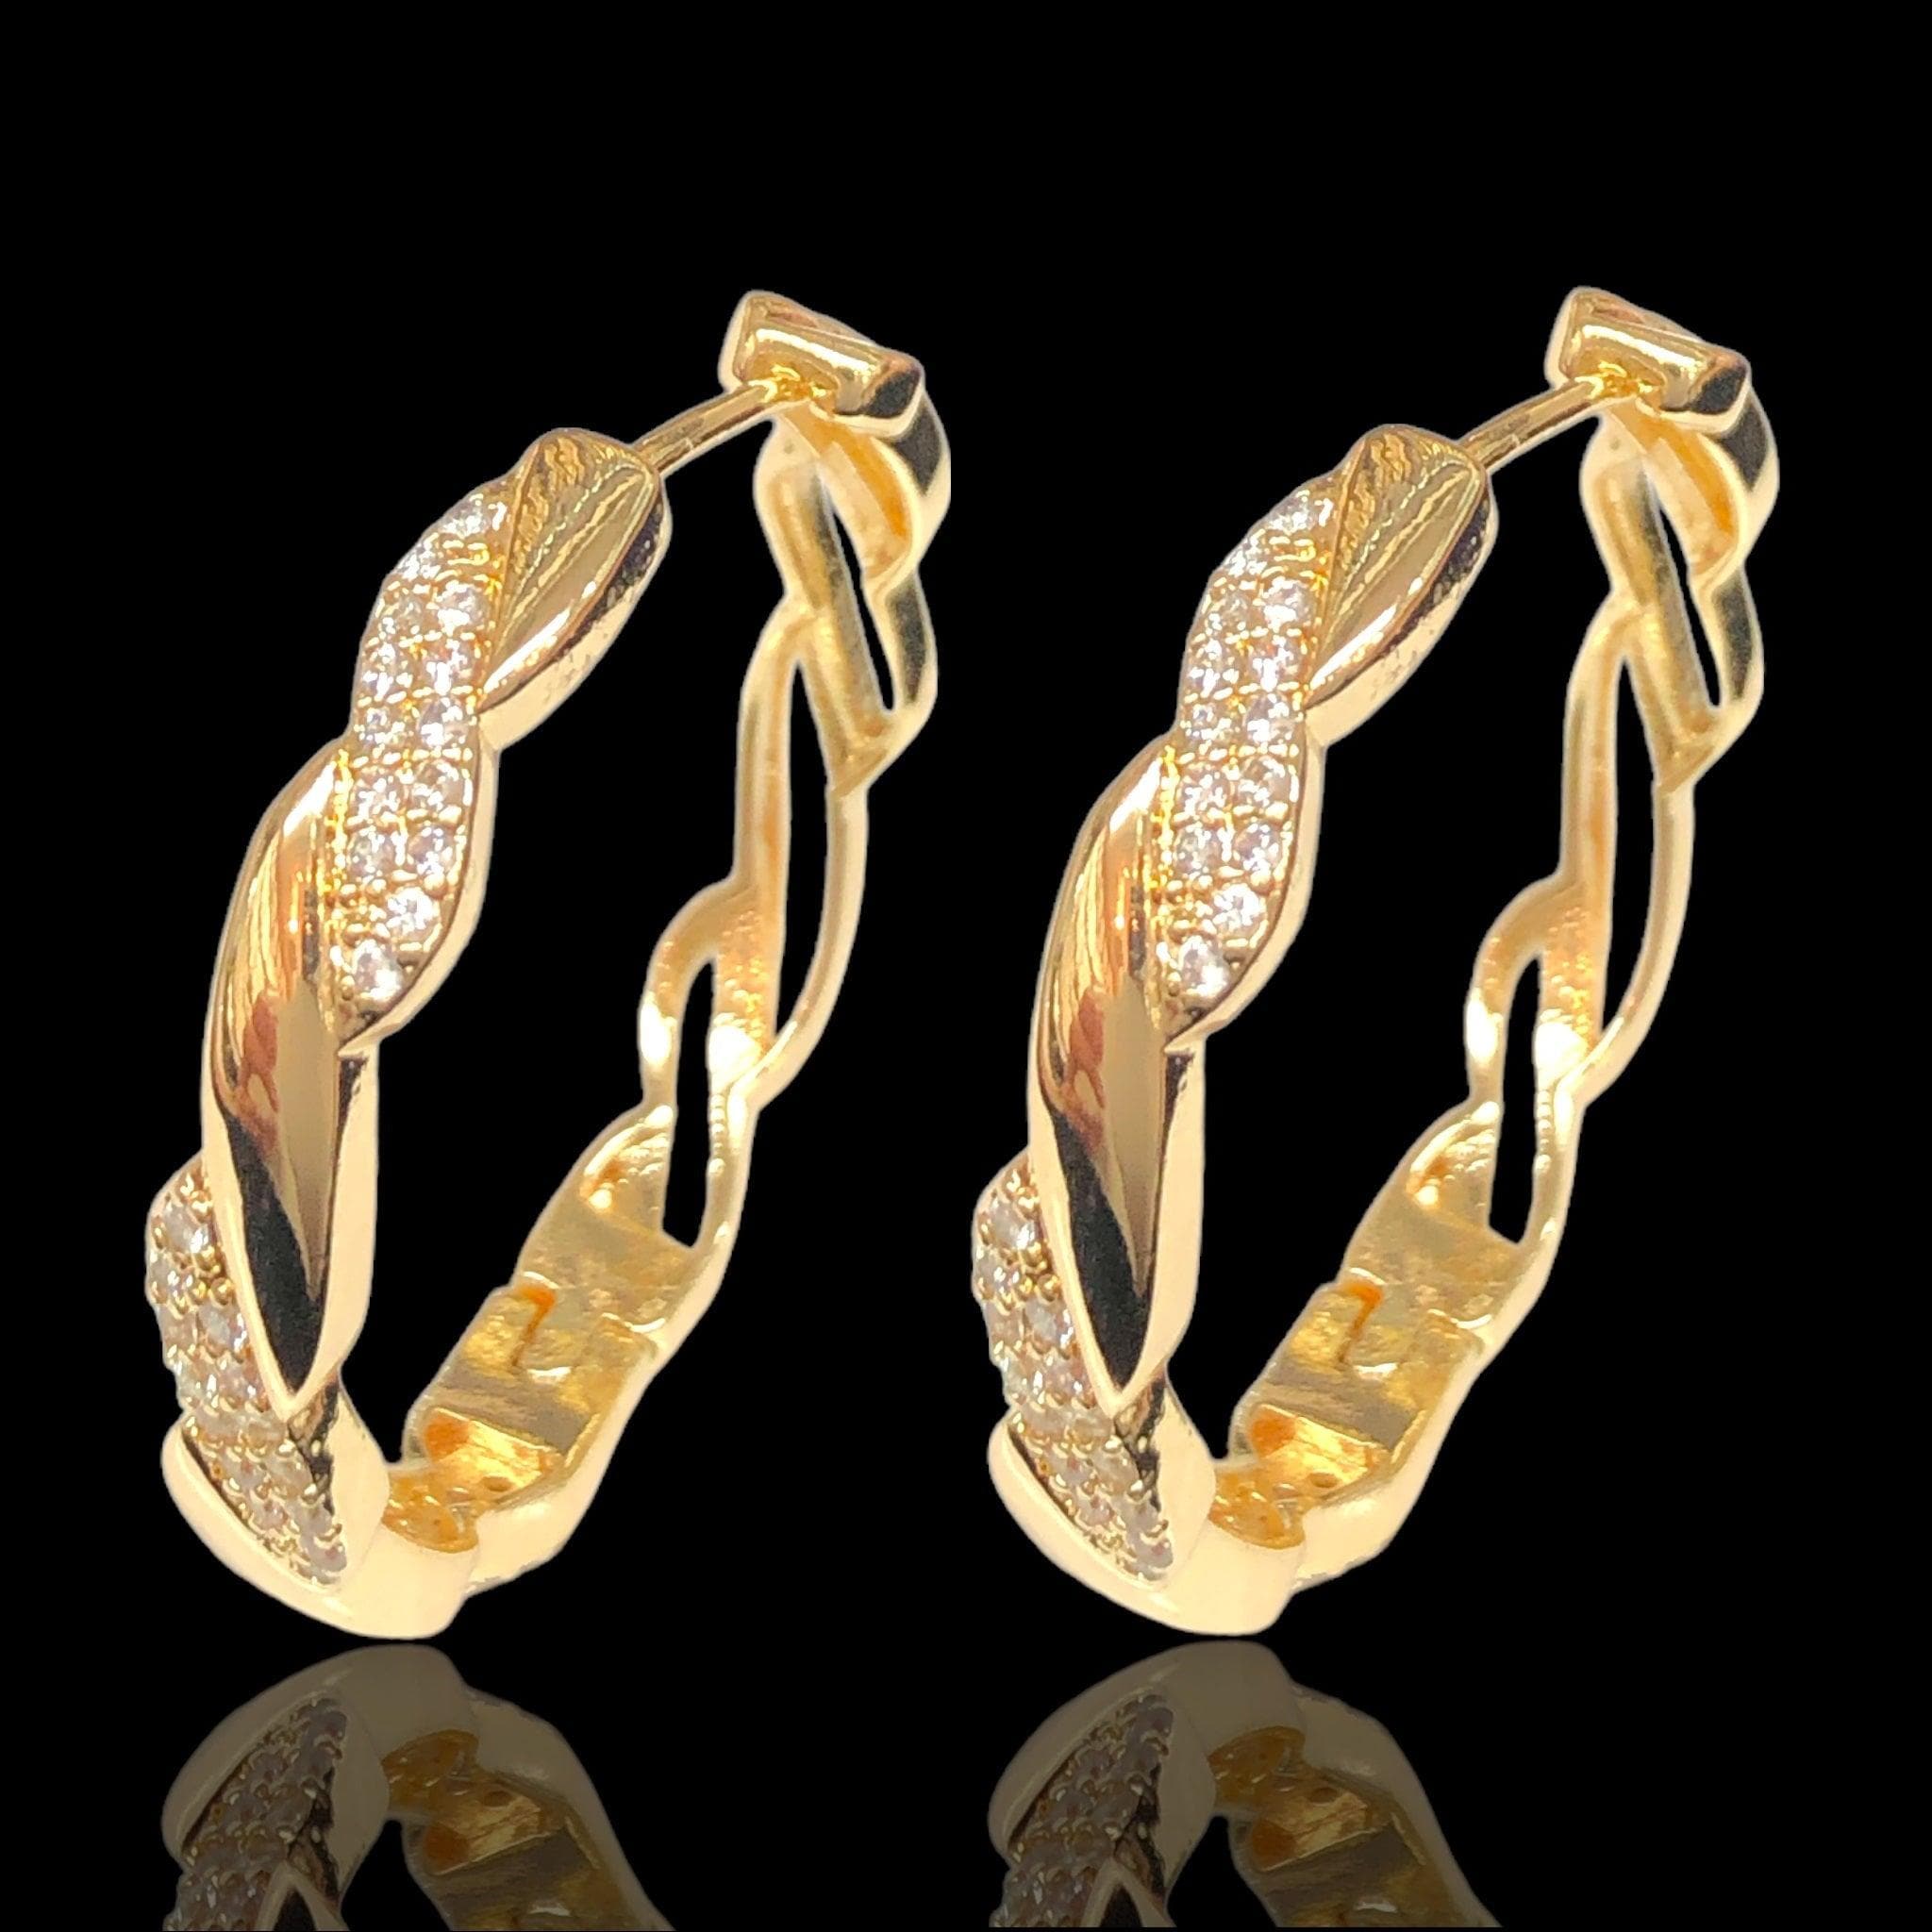 OLE 0608 18K Gold Filled Swiss Chic CZ Hoop Earrings Oro Laminado Kuania